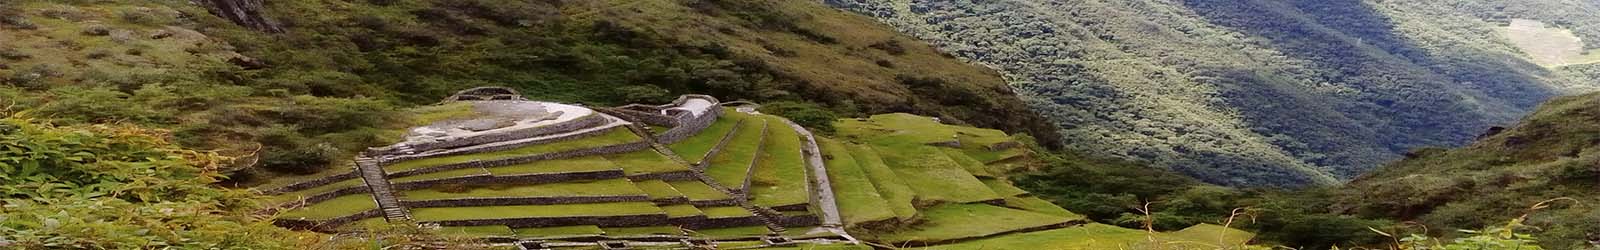 Classic Inca Trail to Machu Picchu 4D/3N